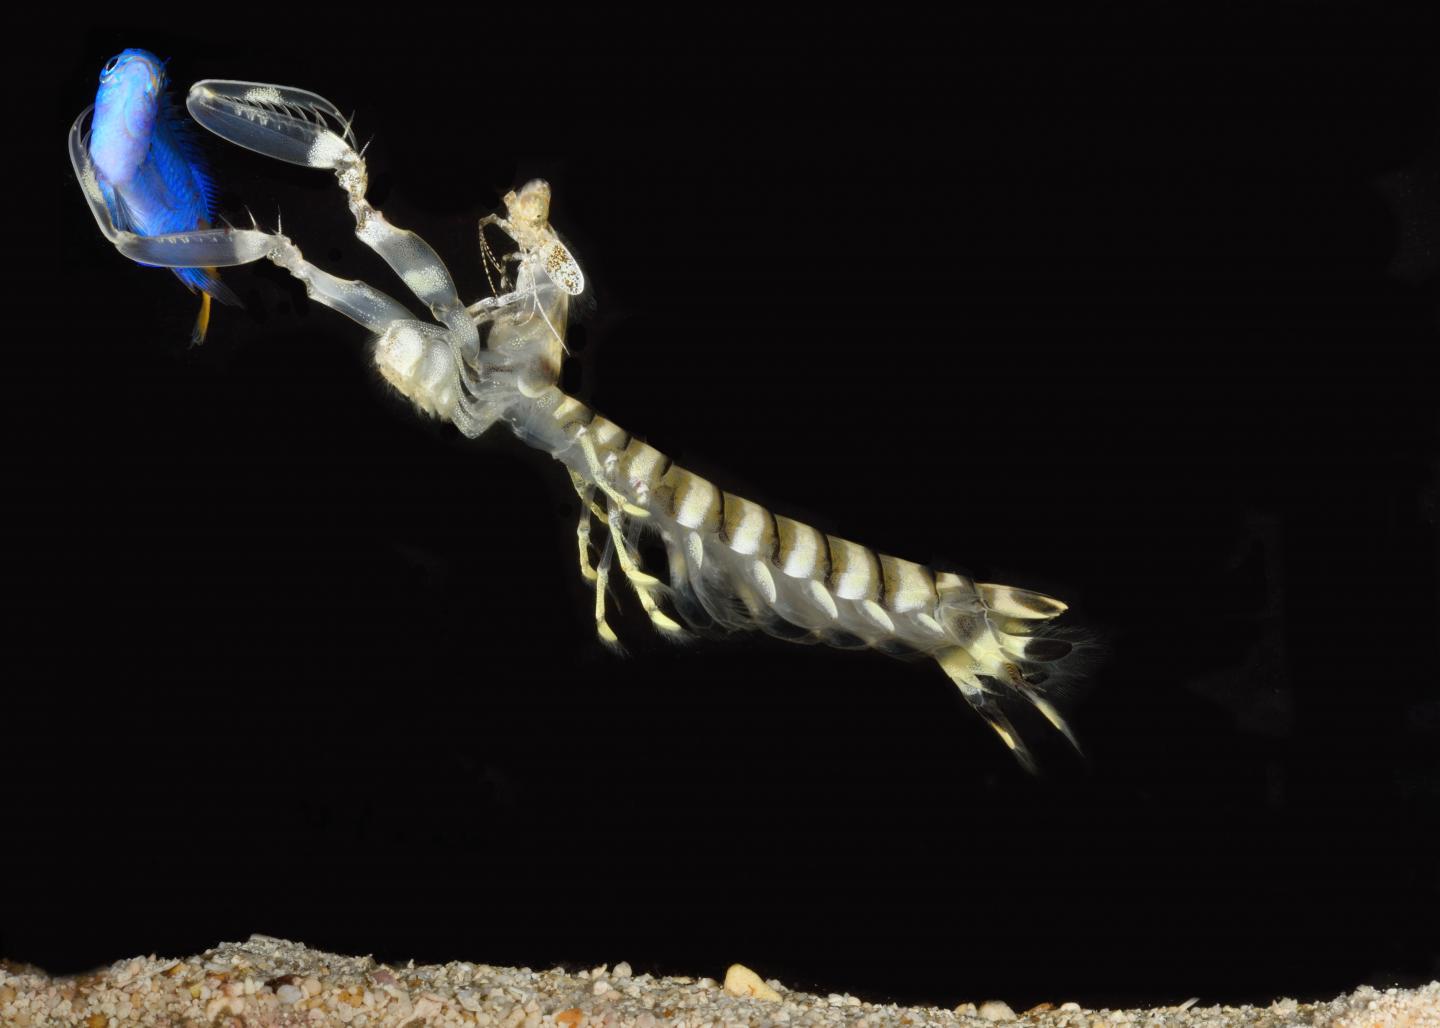 Mantis Shrimp Catching a Fish